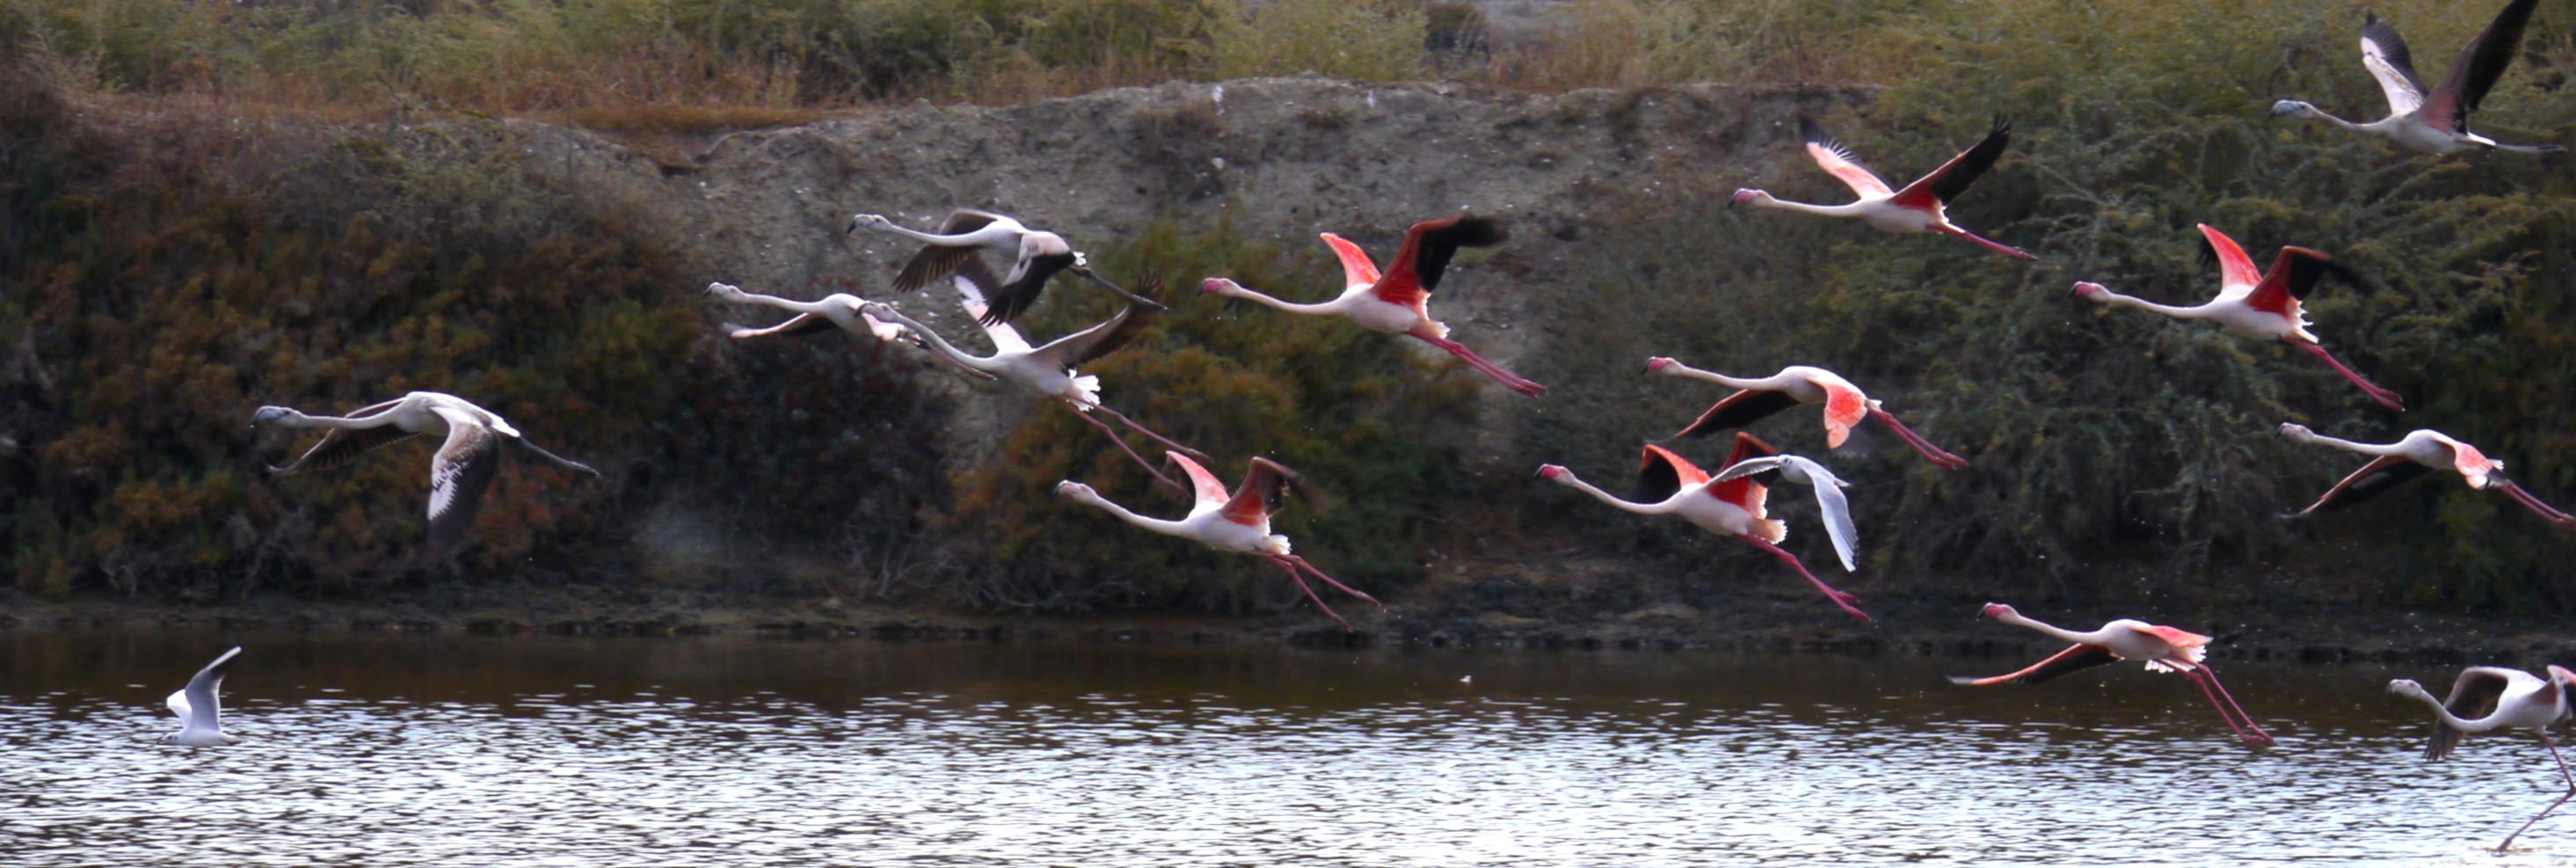 Zwei Möwen und mehrere Flamingo - Familien